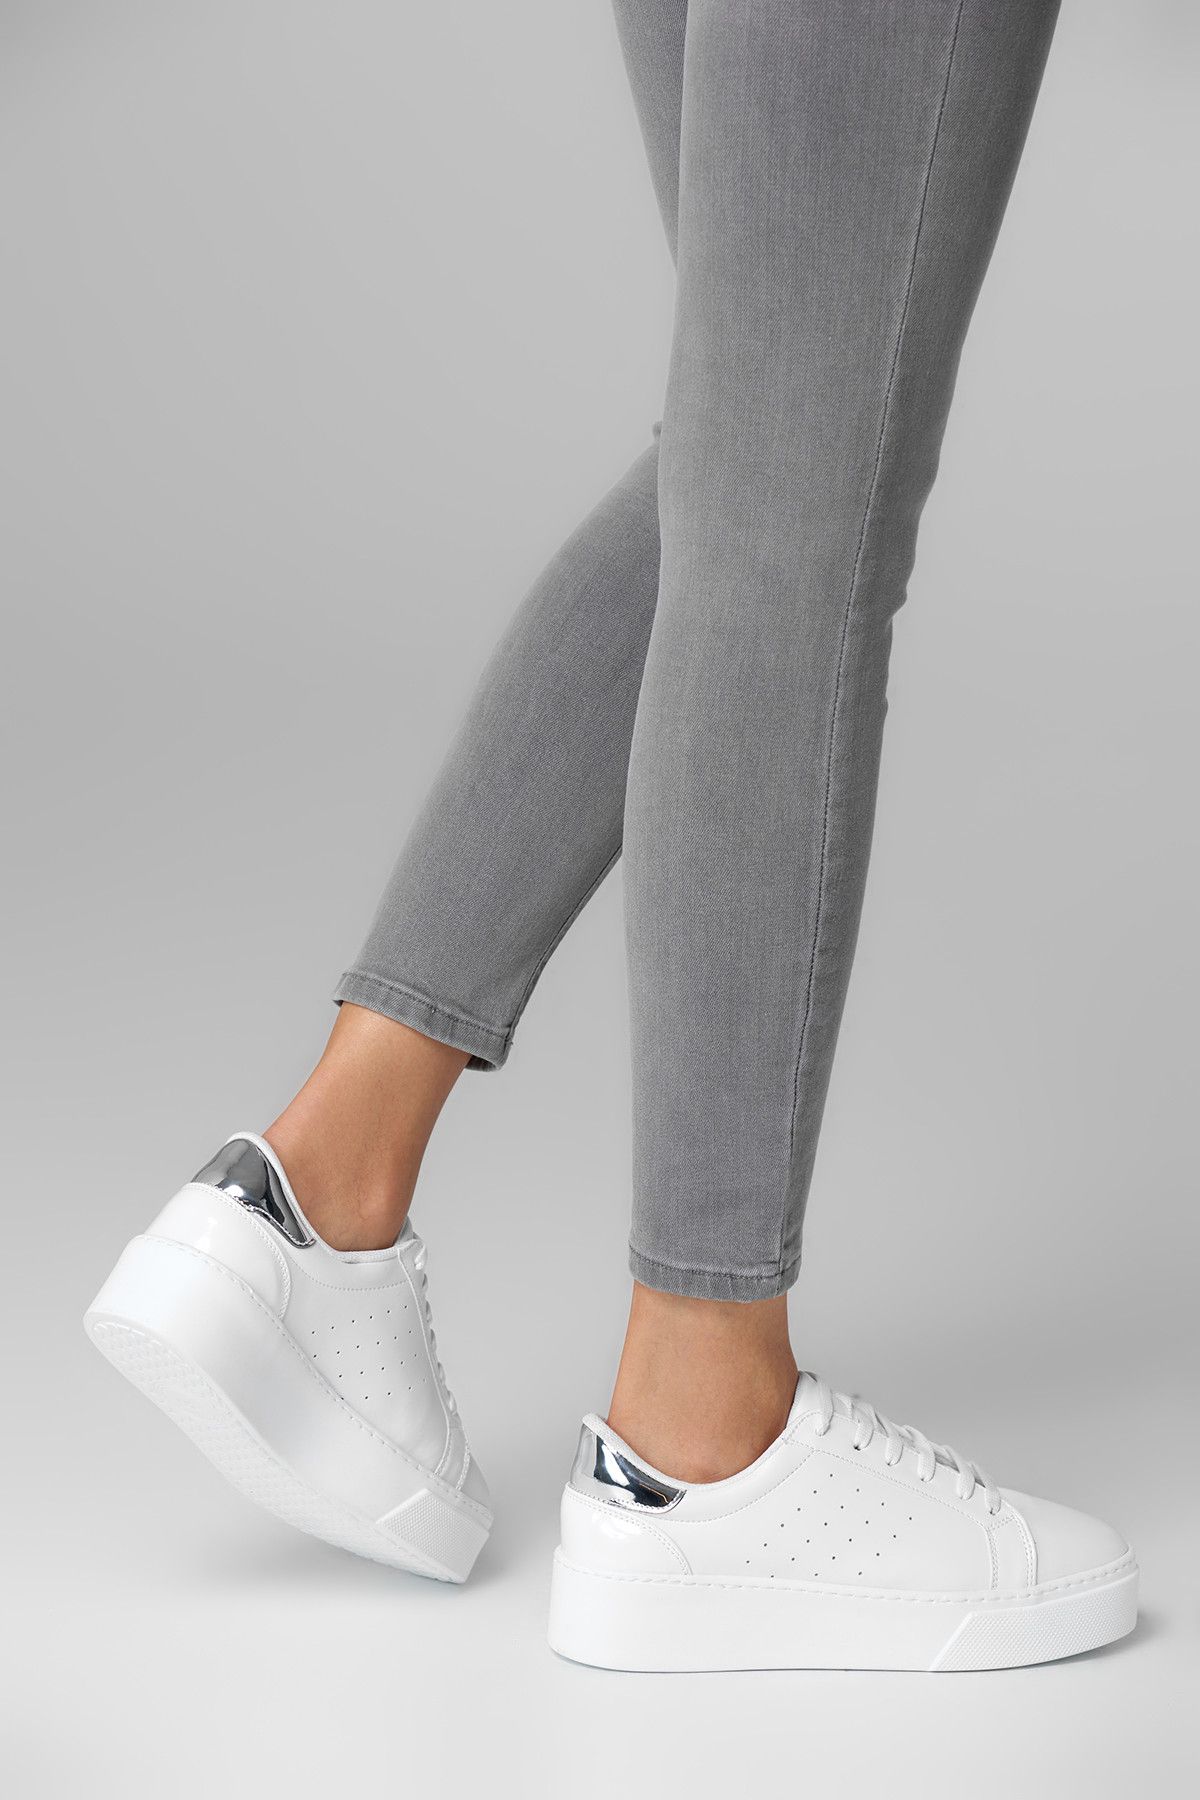 TRENDYOLMİLLA Beyaz Dolgu Topuklu Kadın Sneaker TSASS18OZ0017